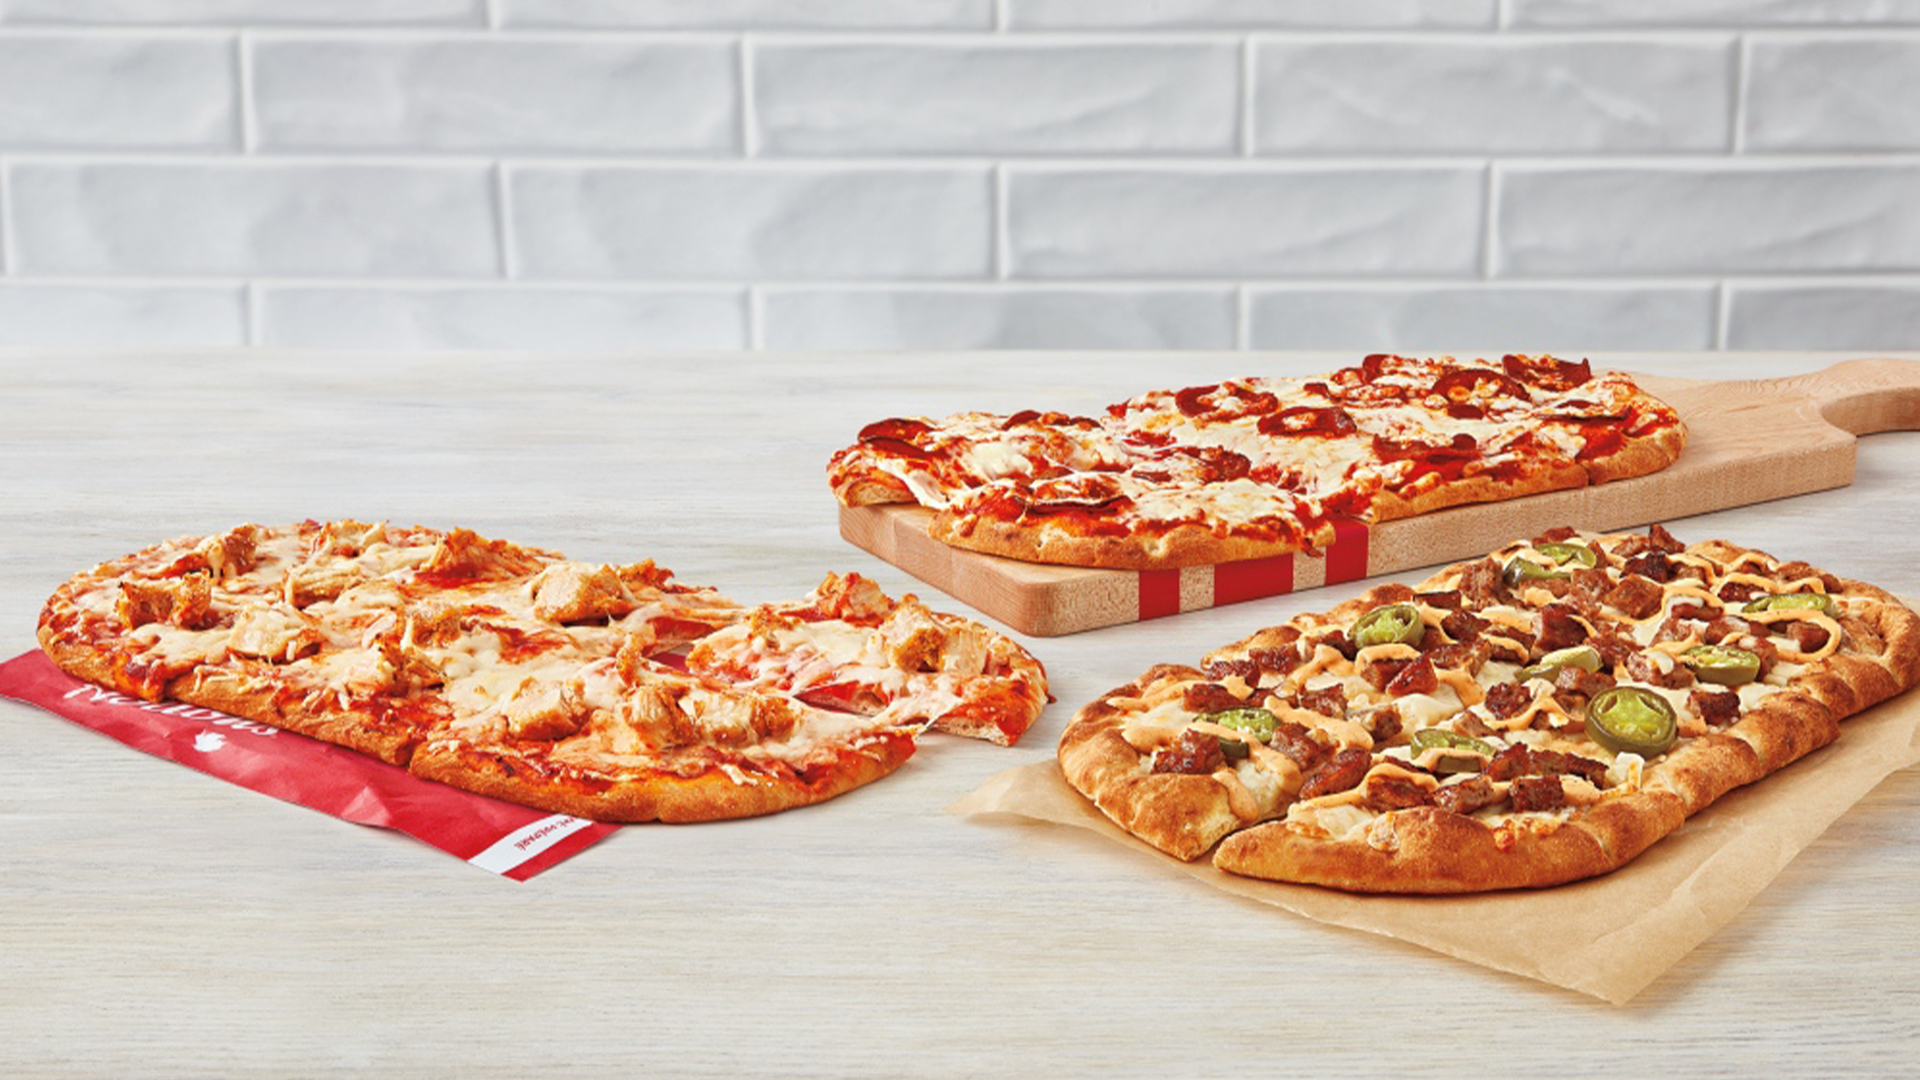 La chaîne de restauration Tim Hortons y va d’un nouvel essai en ajoutant des pizzas à son menu dans quelques-uns de ses restaurants.